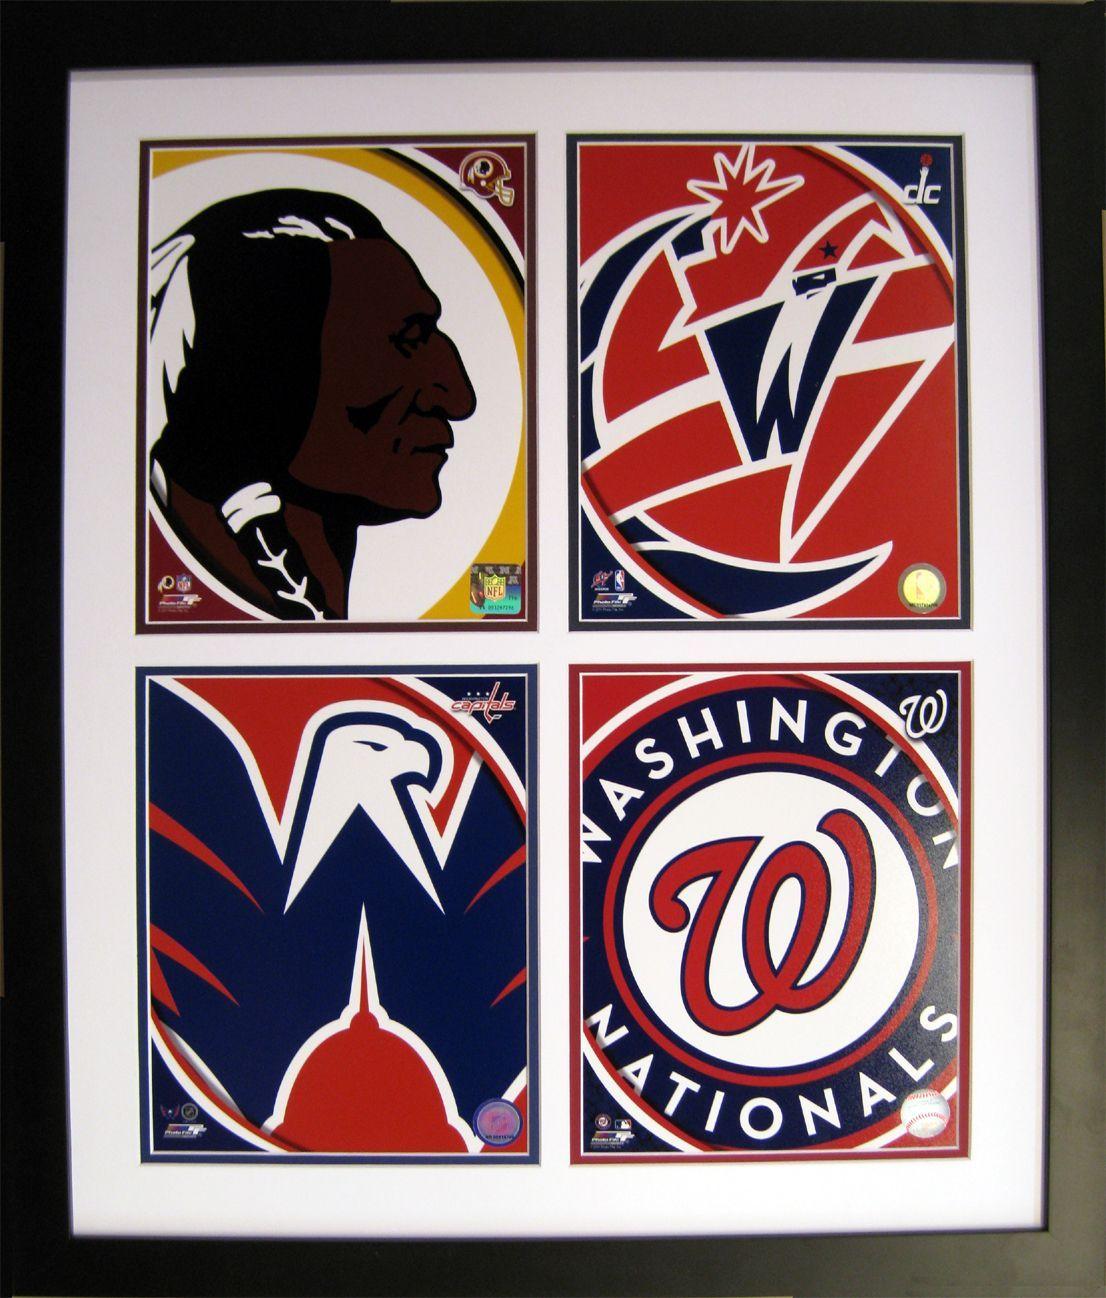 DC Wizards Logo - Washington, D.C. logo quad Redskins, Wizards, Capitals, Nationals